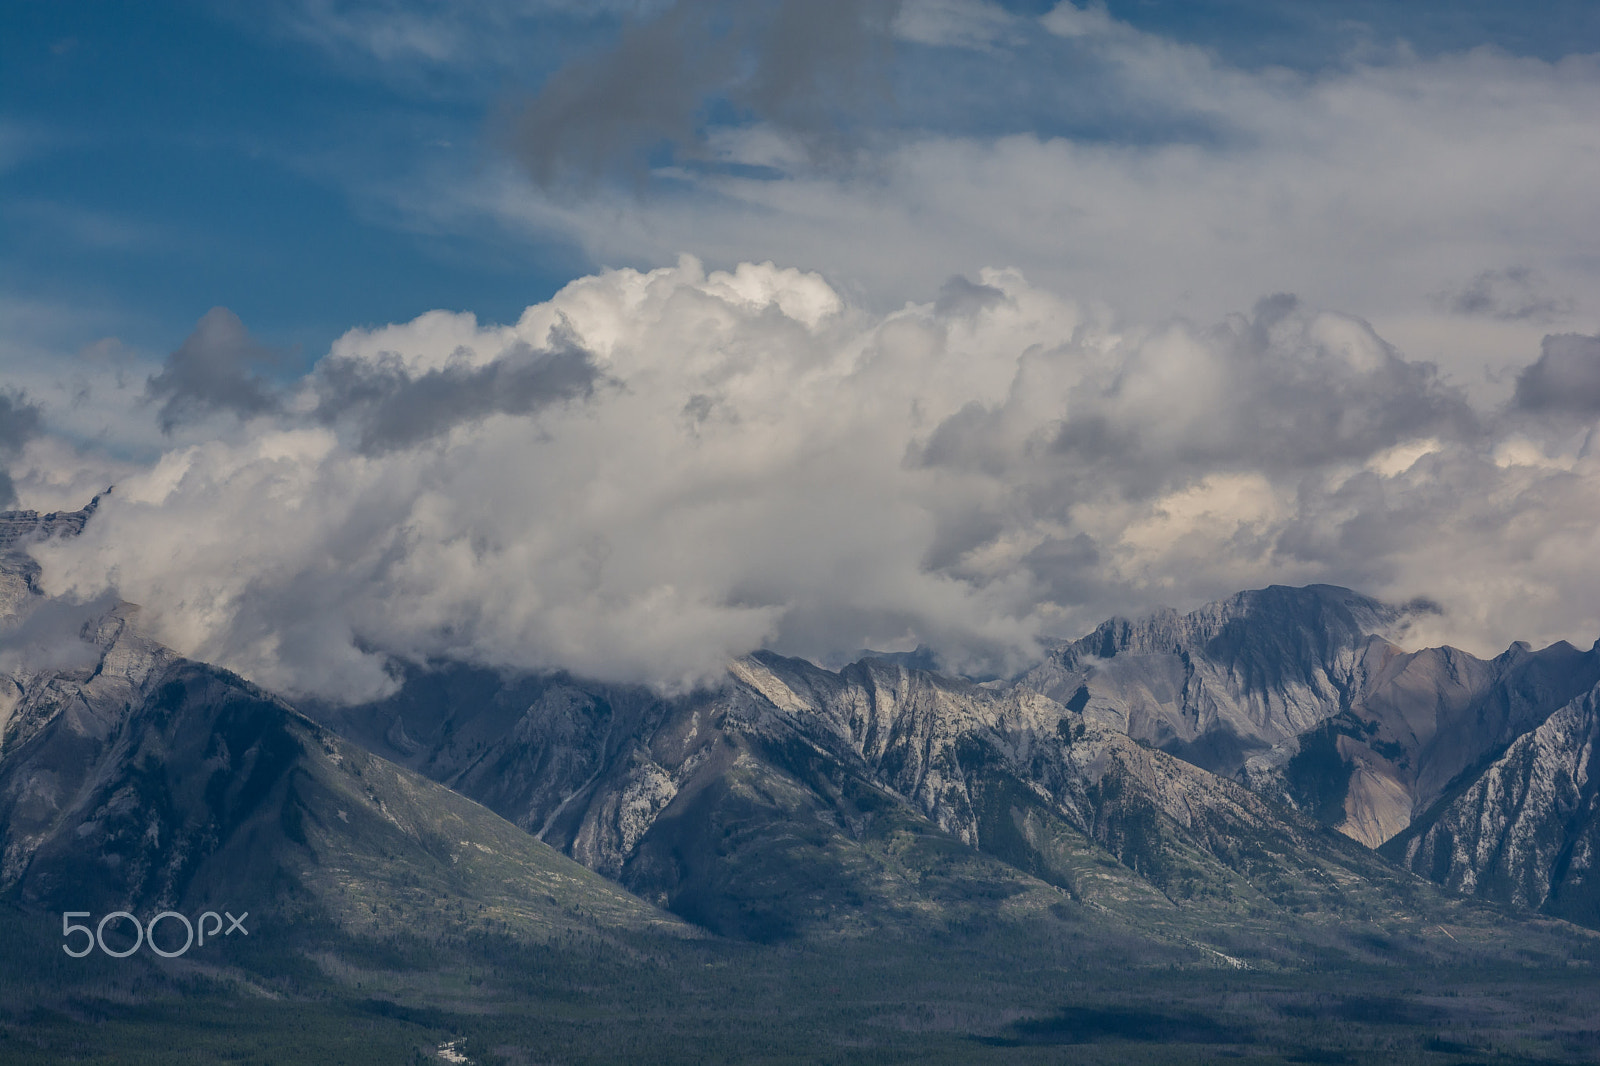 Nikon D7100 + Nikon AF-S Nikkor 24-120mm F4G ED VR sample photo. Canadian mountains, clouds photography